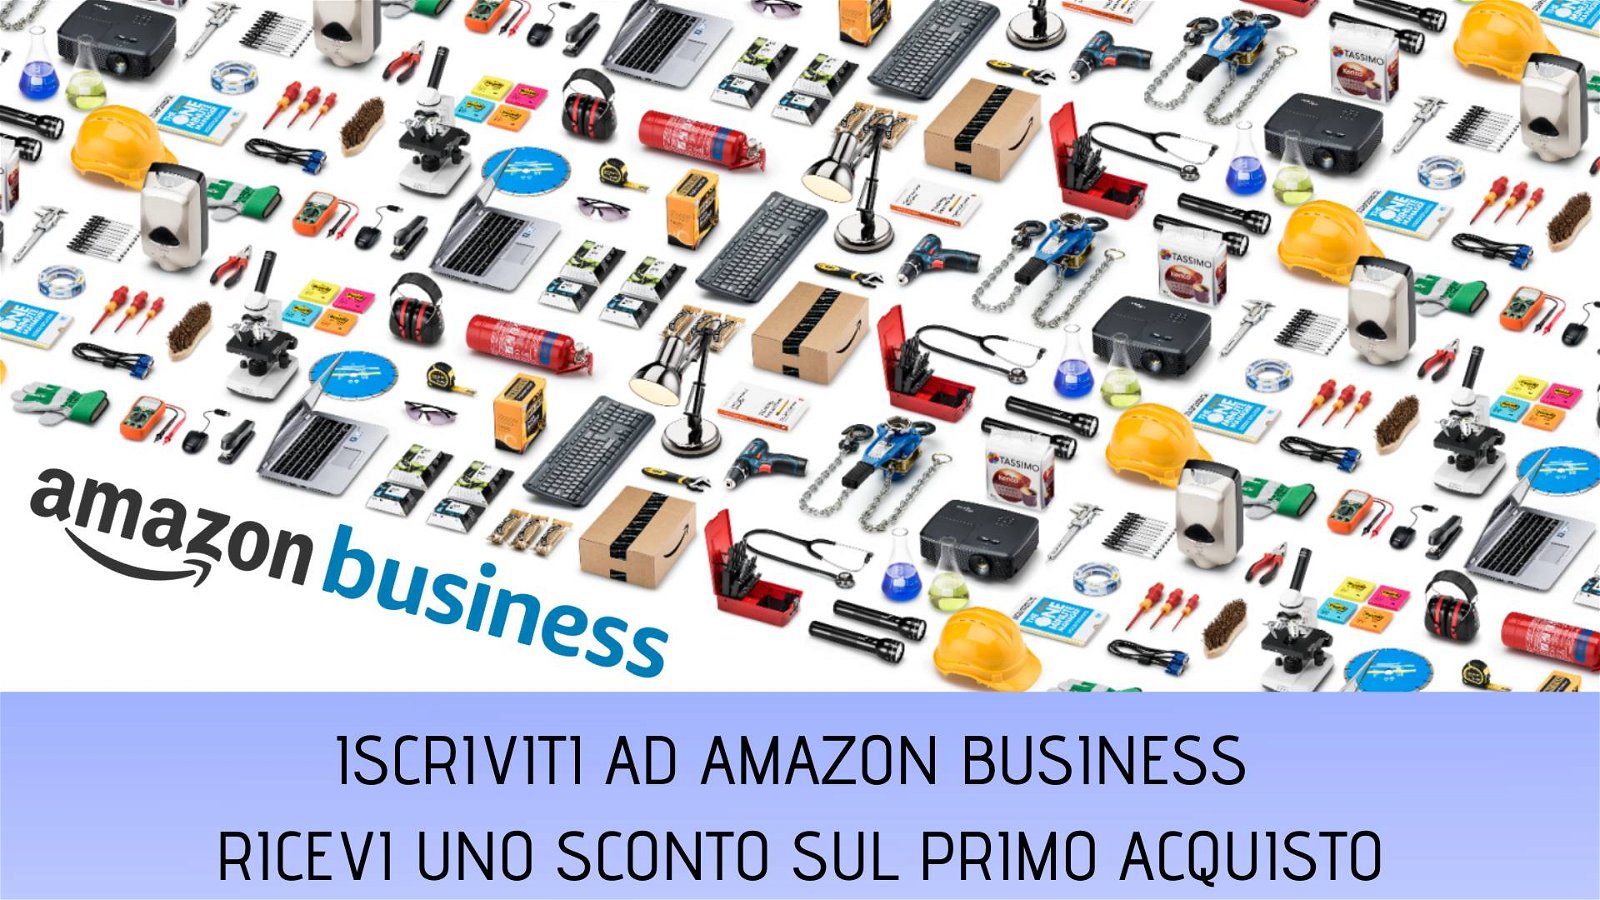 Immagine di Amazon Business: 20% di sconto sul primo acquisto fino a 100 euro